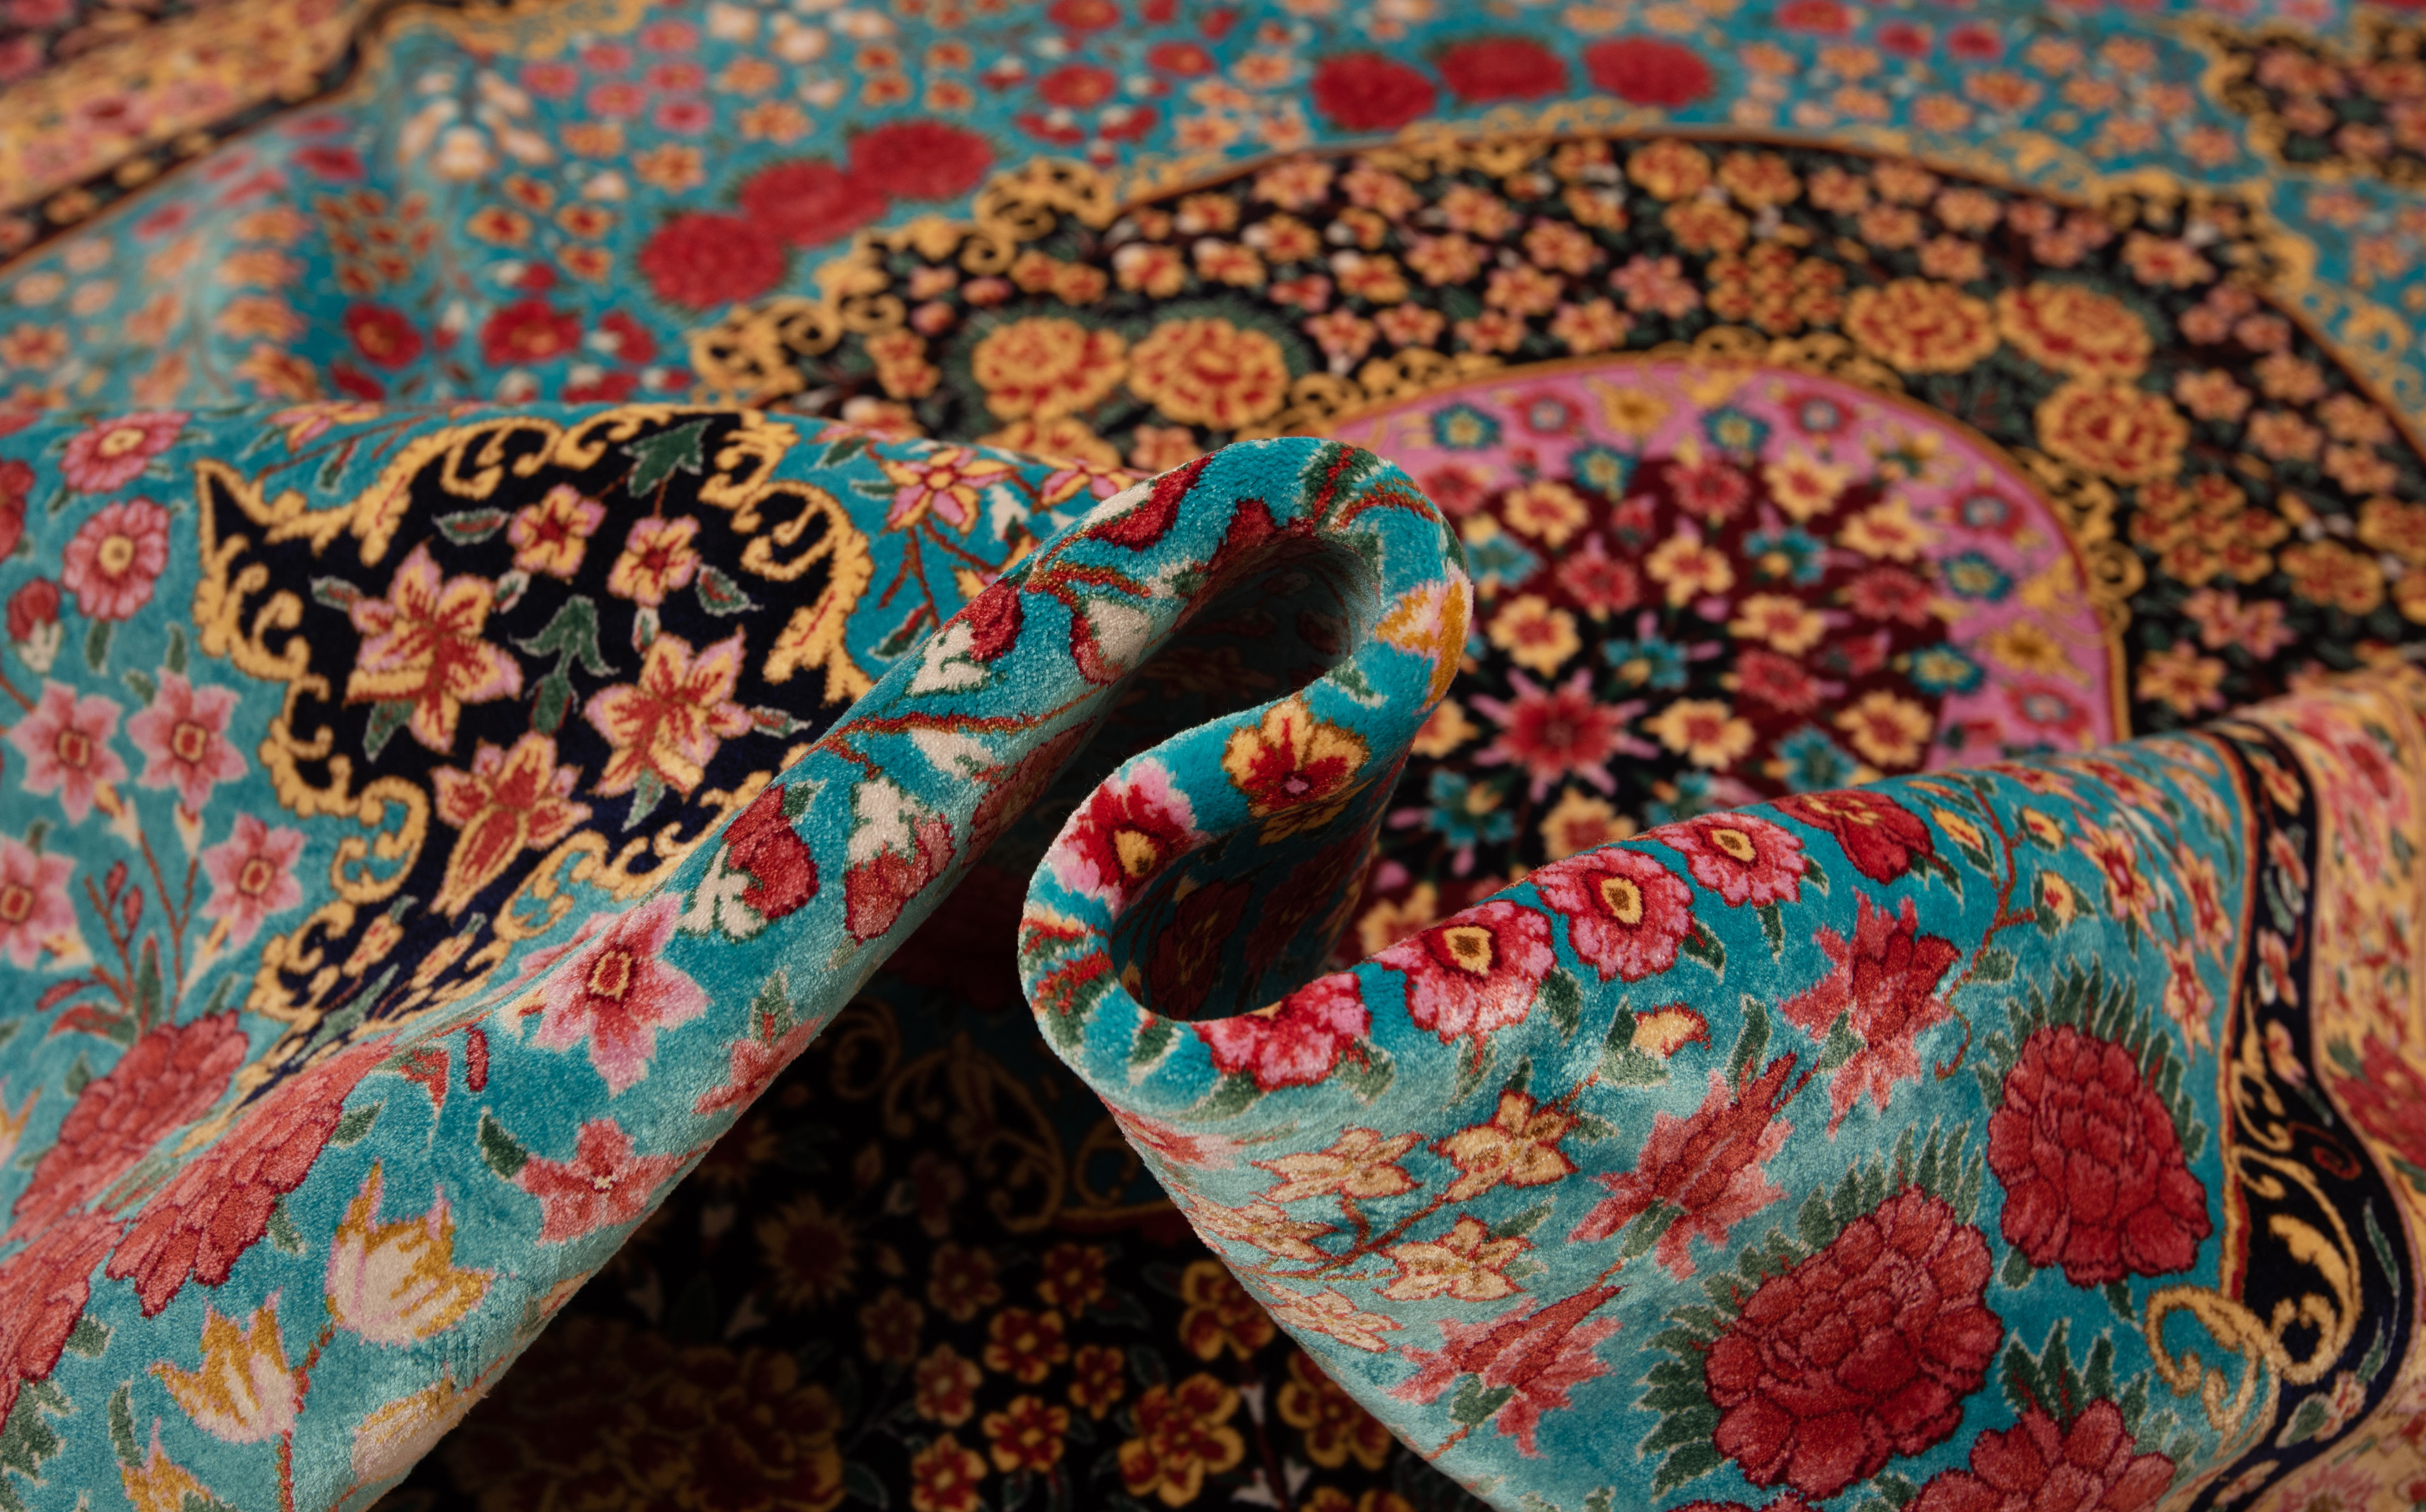 Alfombras clásicas de seda estilo persa, 6 'x 9', a la venta